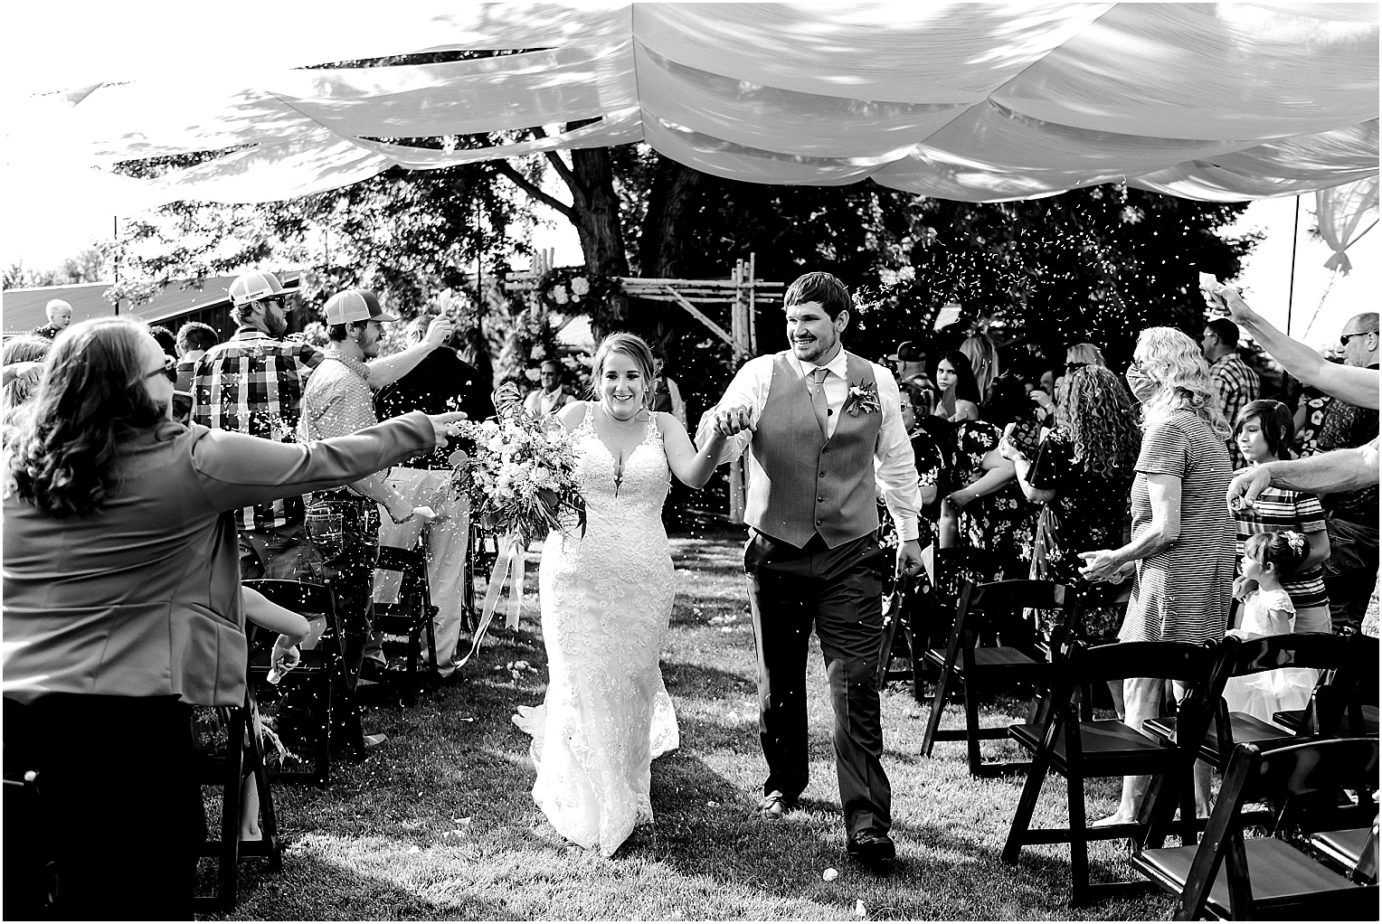 Sugar Pine Barn Wedding Ceremony throwing confetti